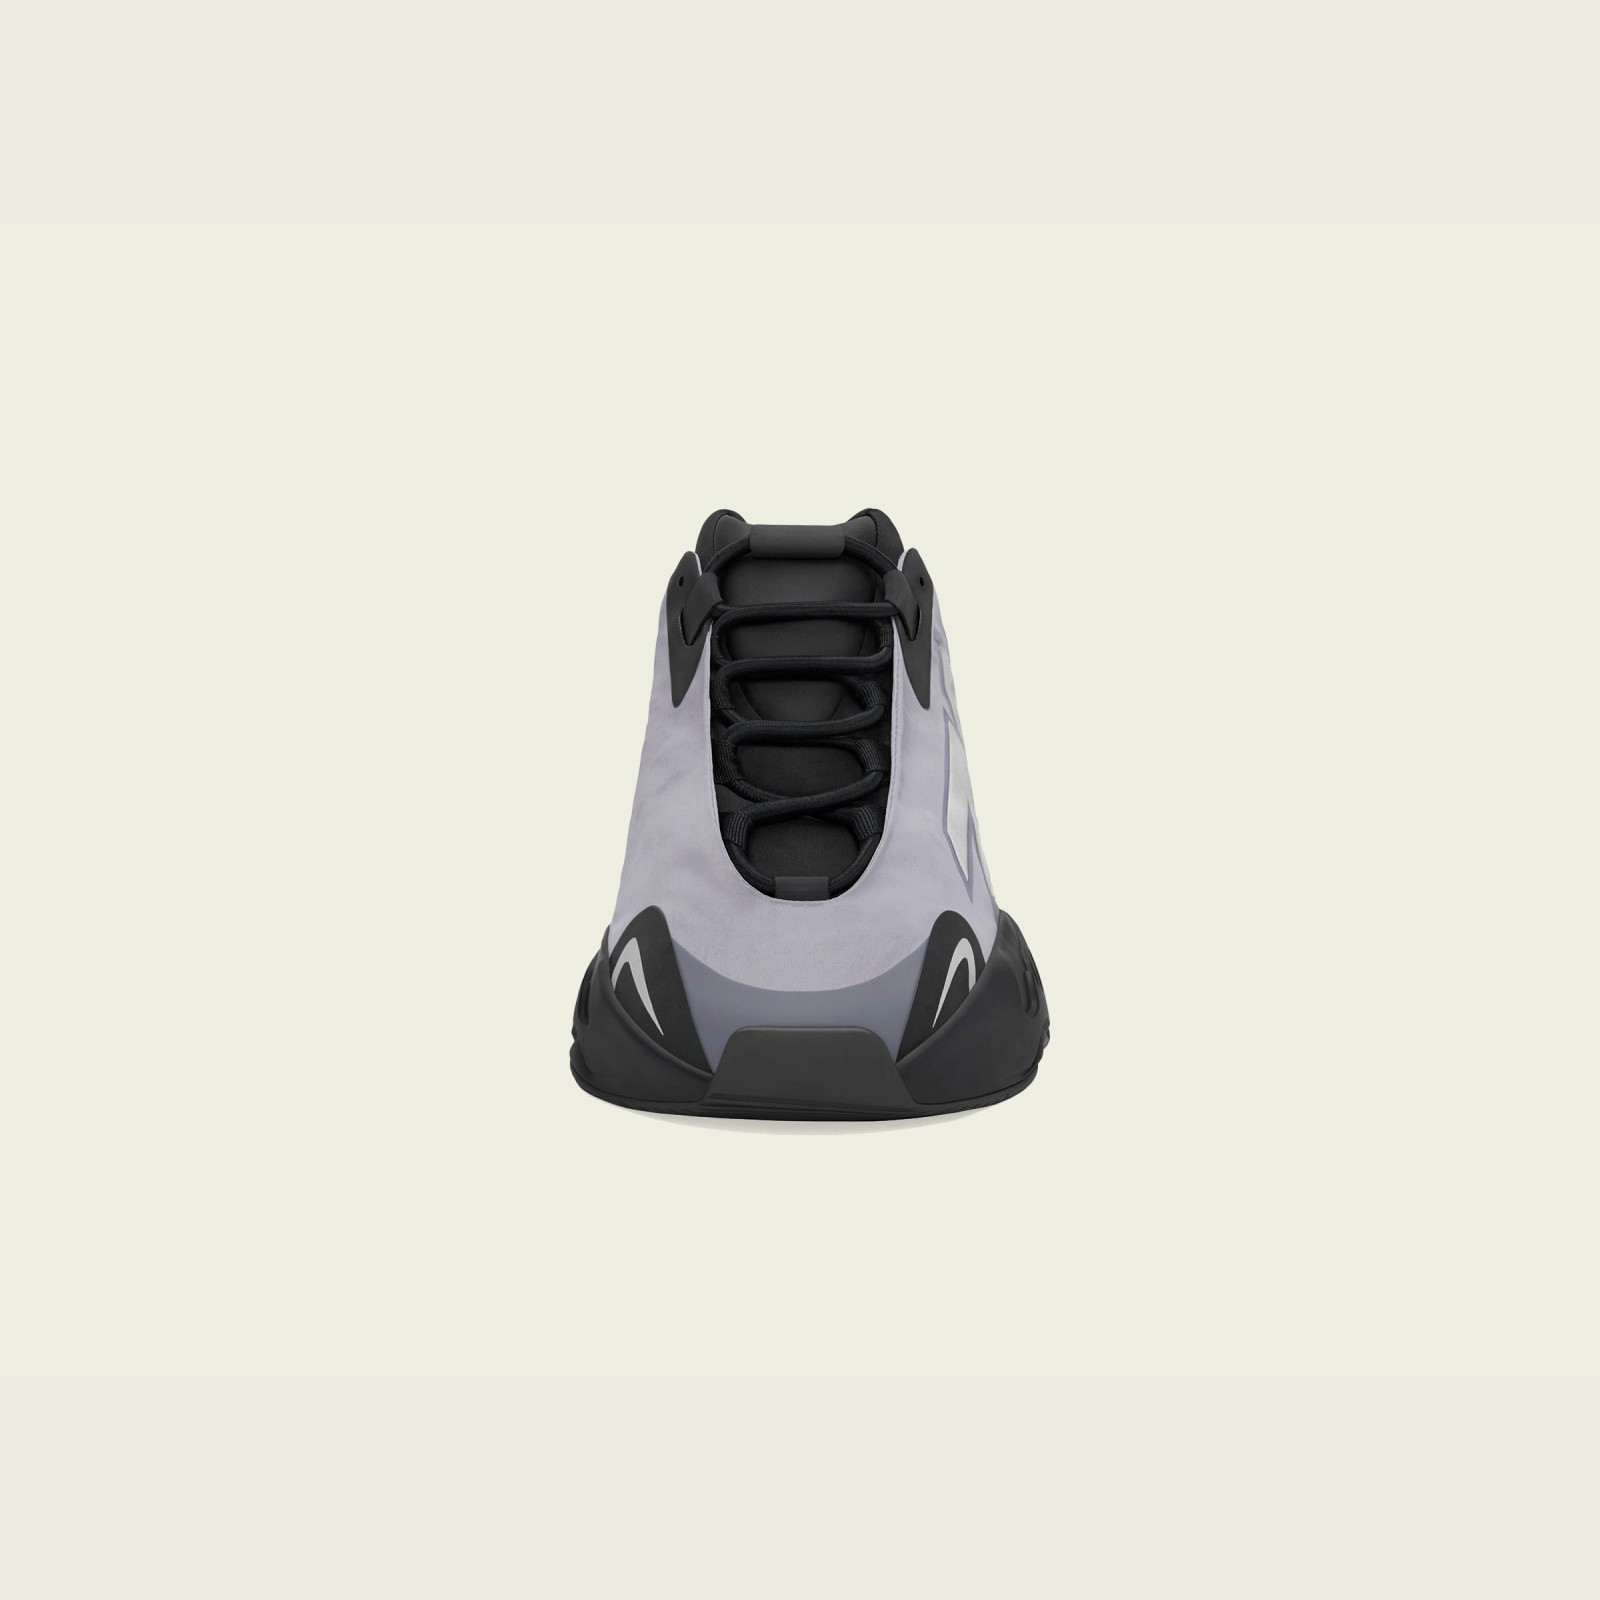 Adidas Yeezy Boost 700
MNVN « Geode »